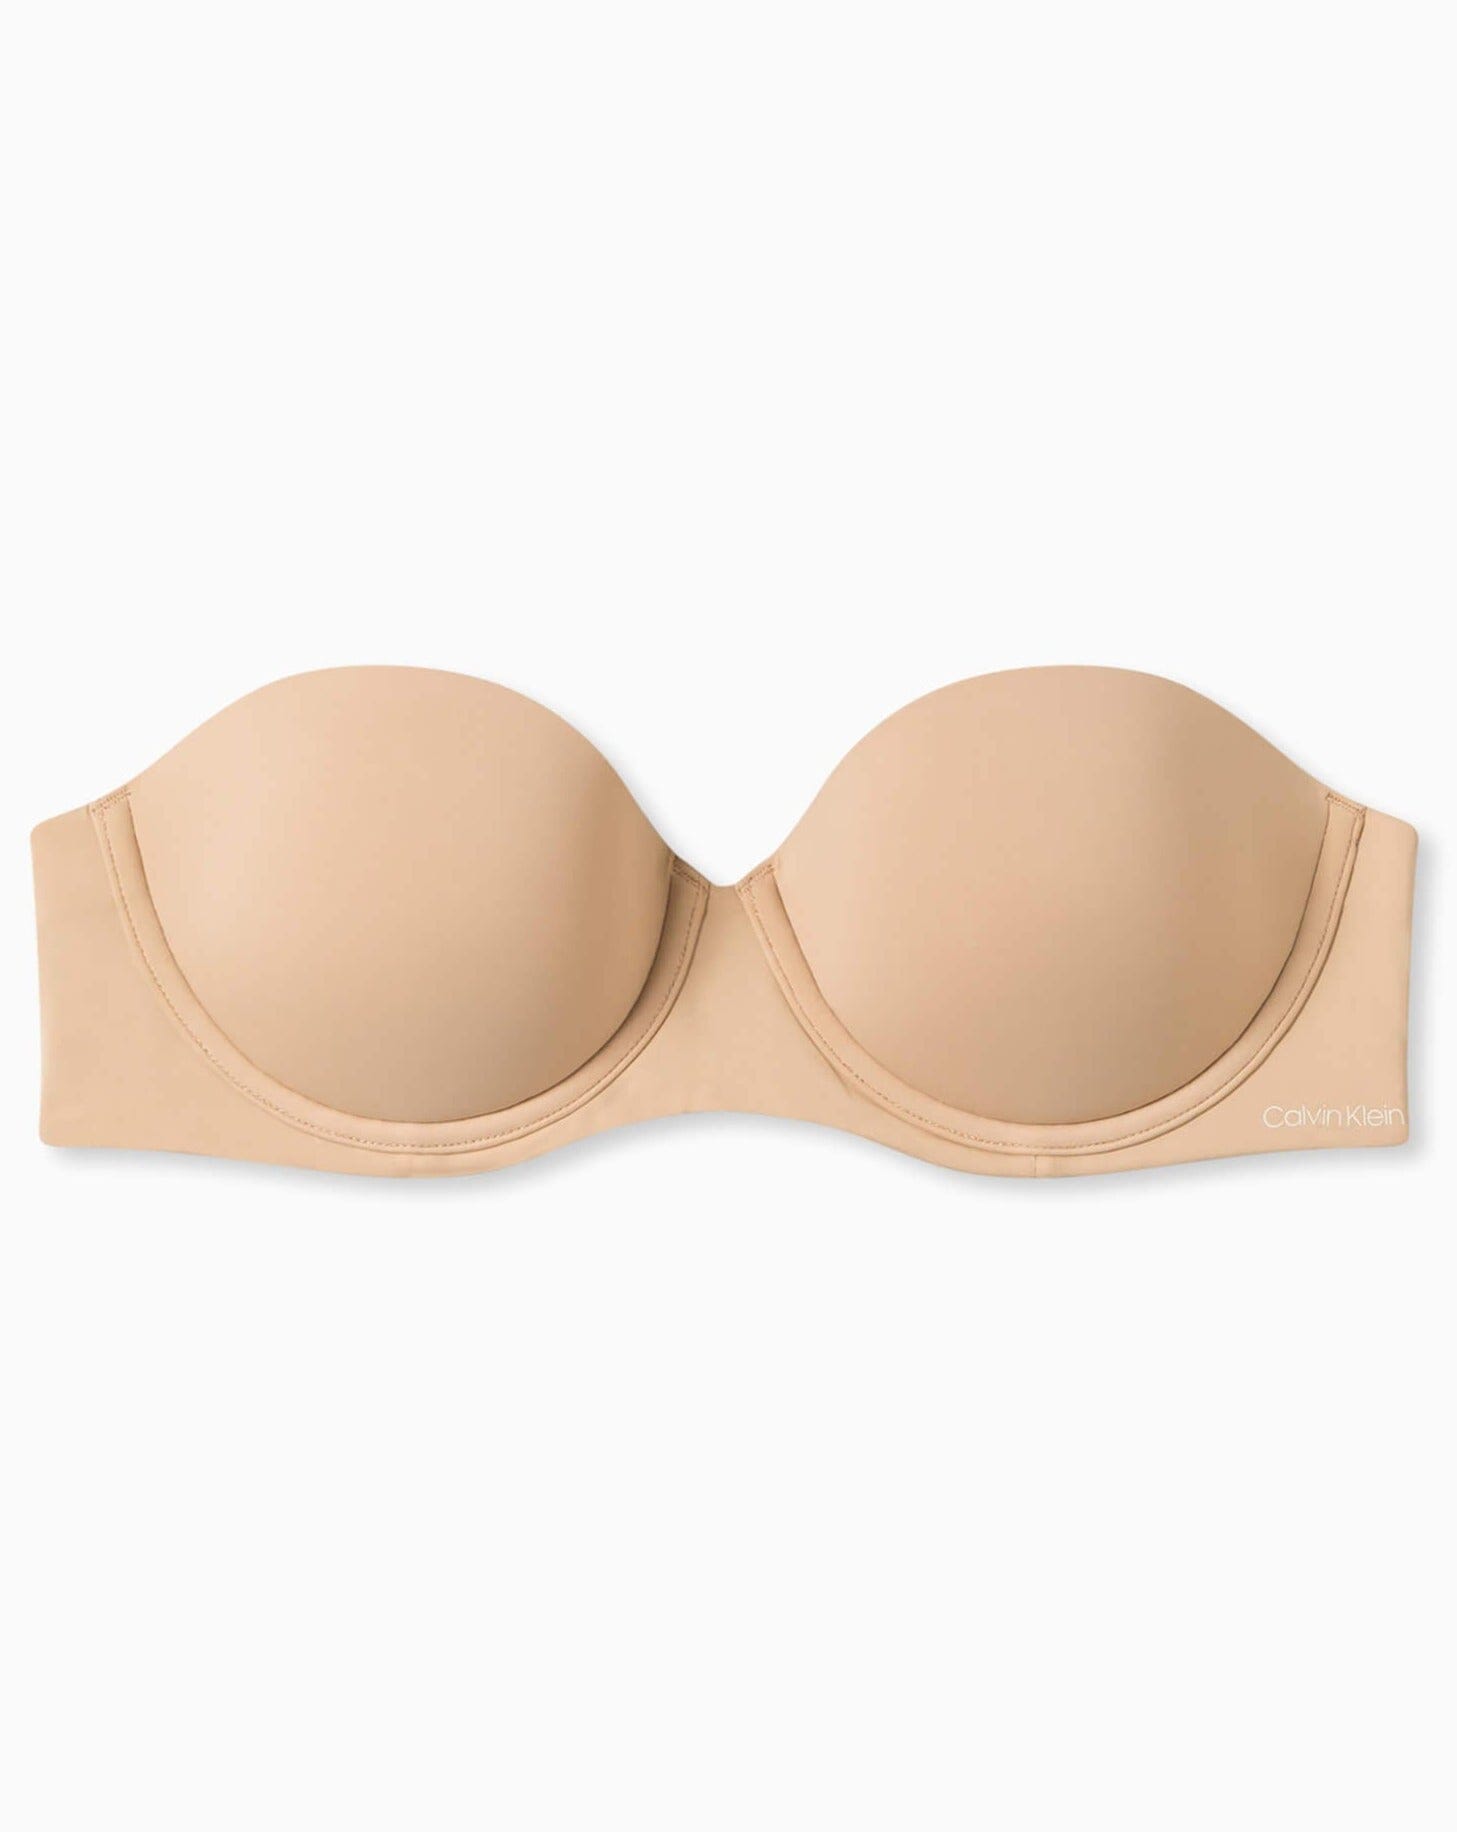 Calvin Klein Underwear PERFECTLY FIT - Multiway / Strapless bra -  sanddune/beige 